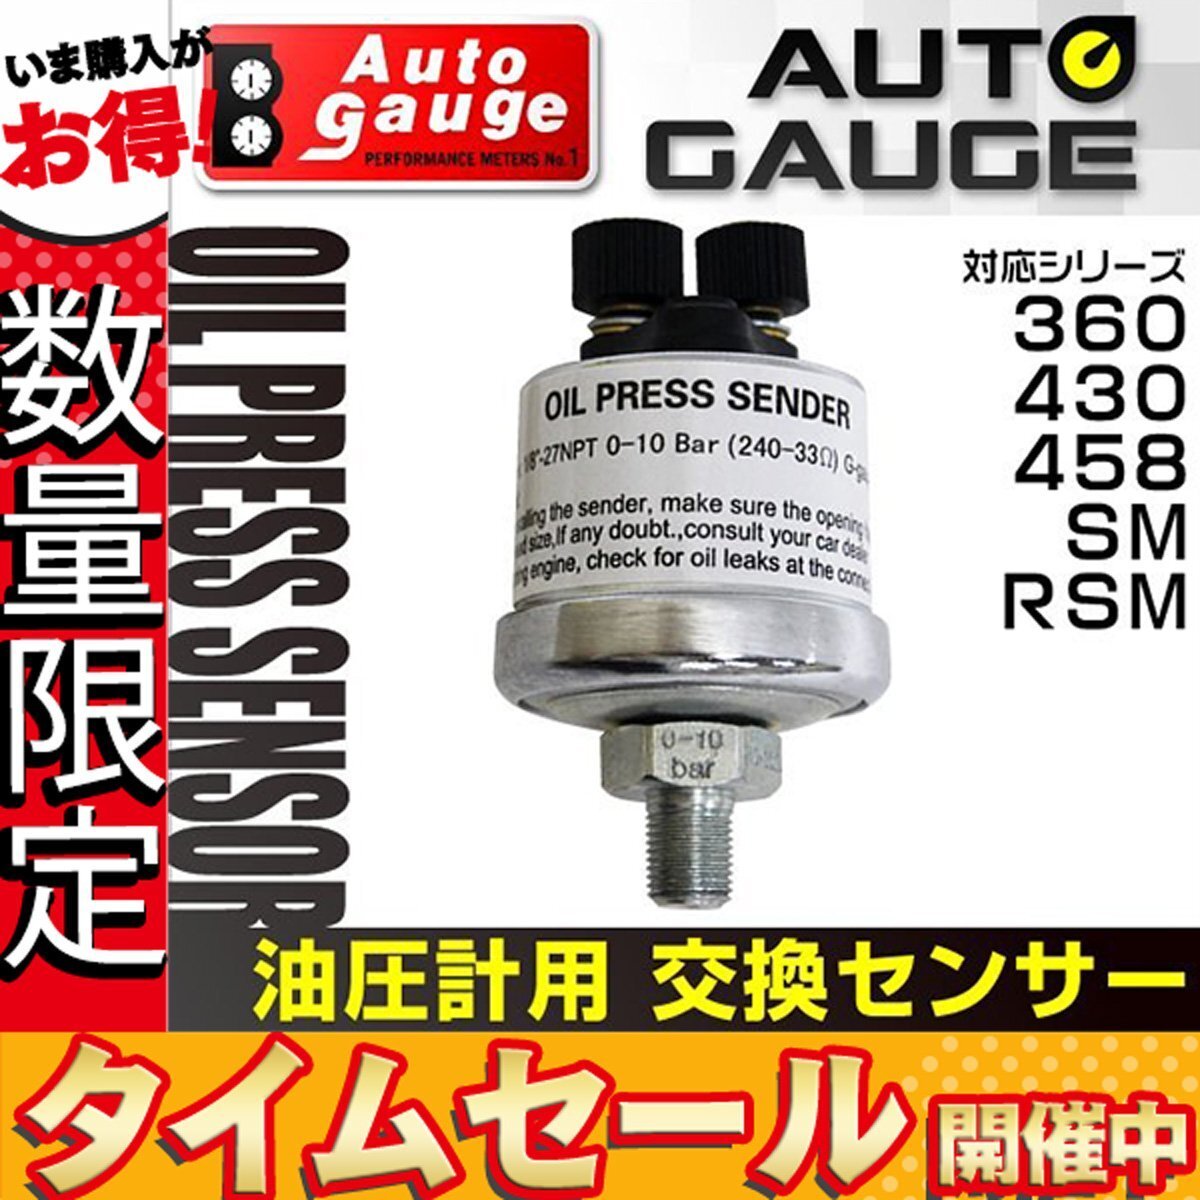 【数量限定価格】オートゲージ 電子式 油圧計 専用 交換センサー 360 430 458 SM RSM シリーズ対応 オプションパーツ_画像1